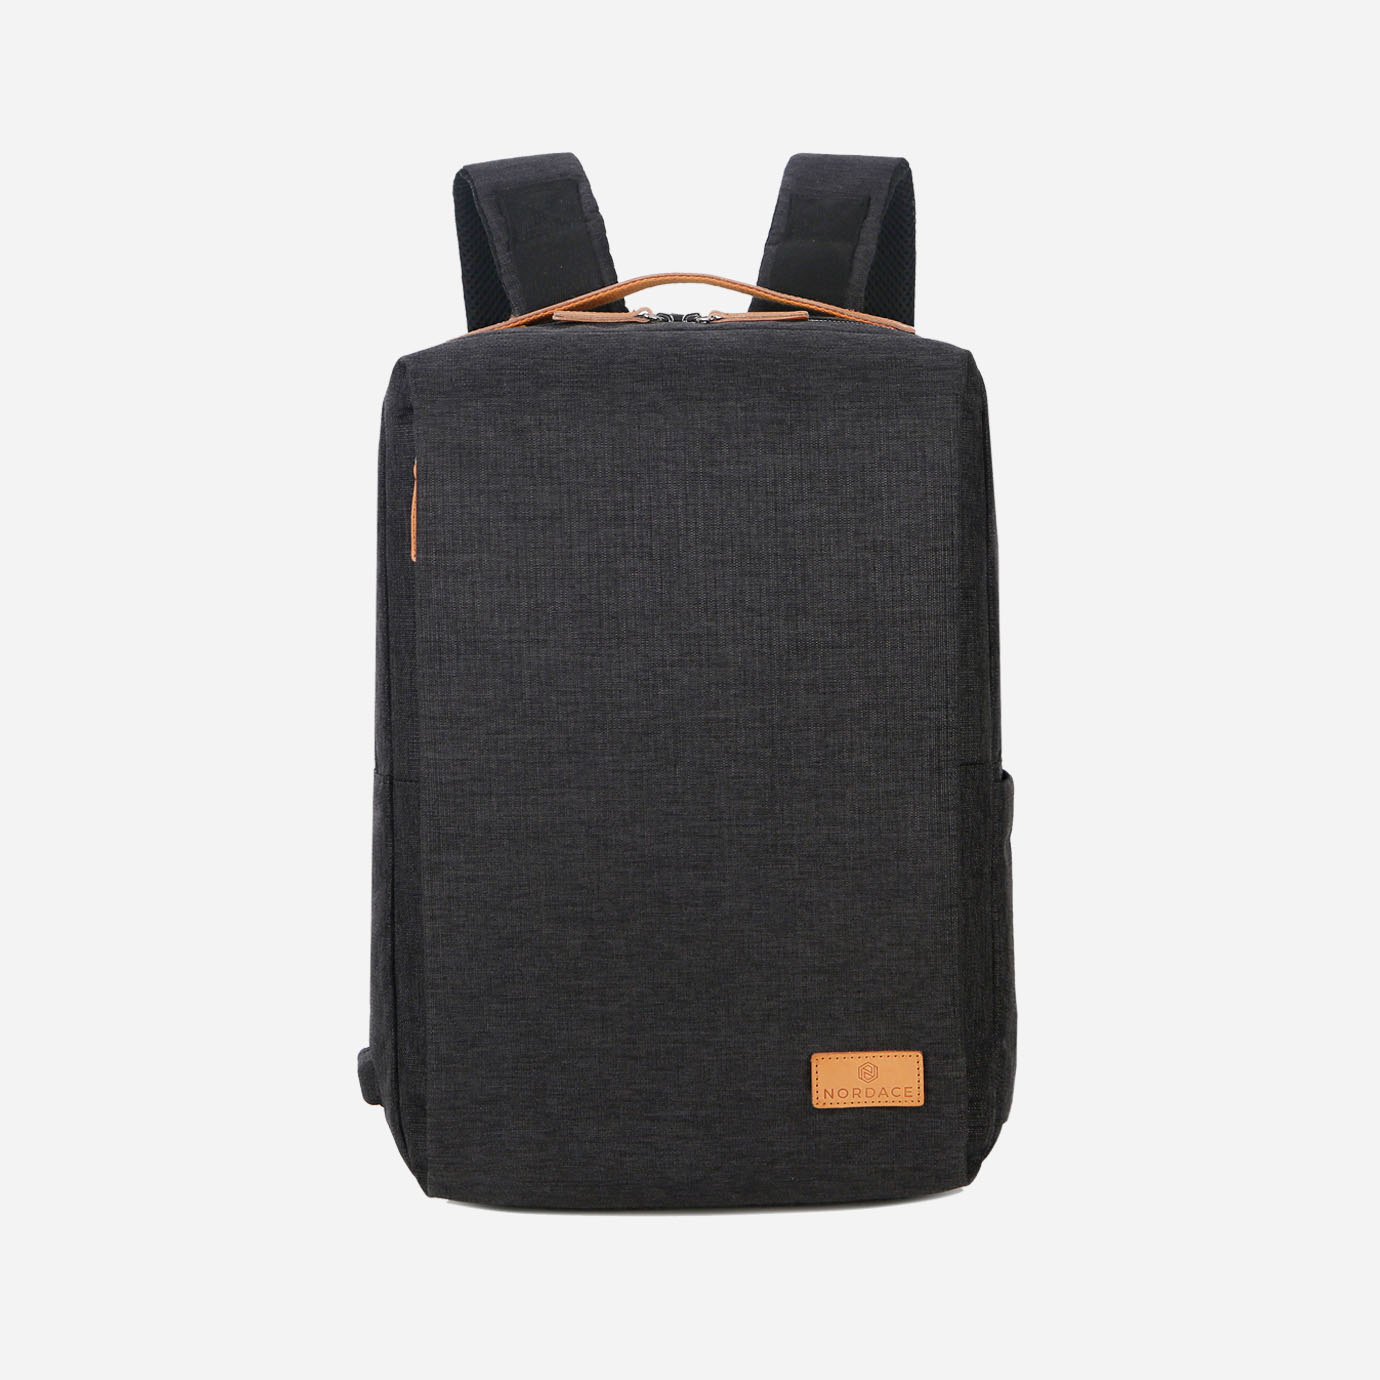 Siena - Smart Backpack